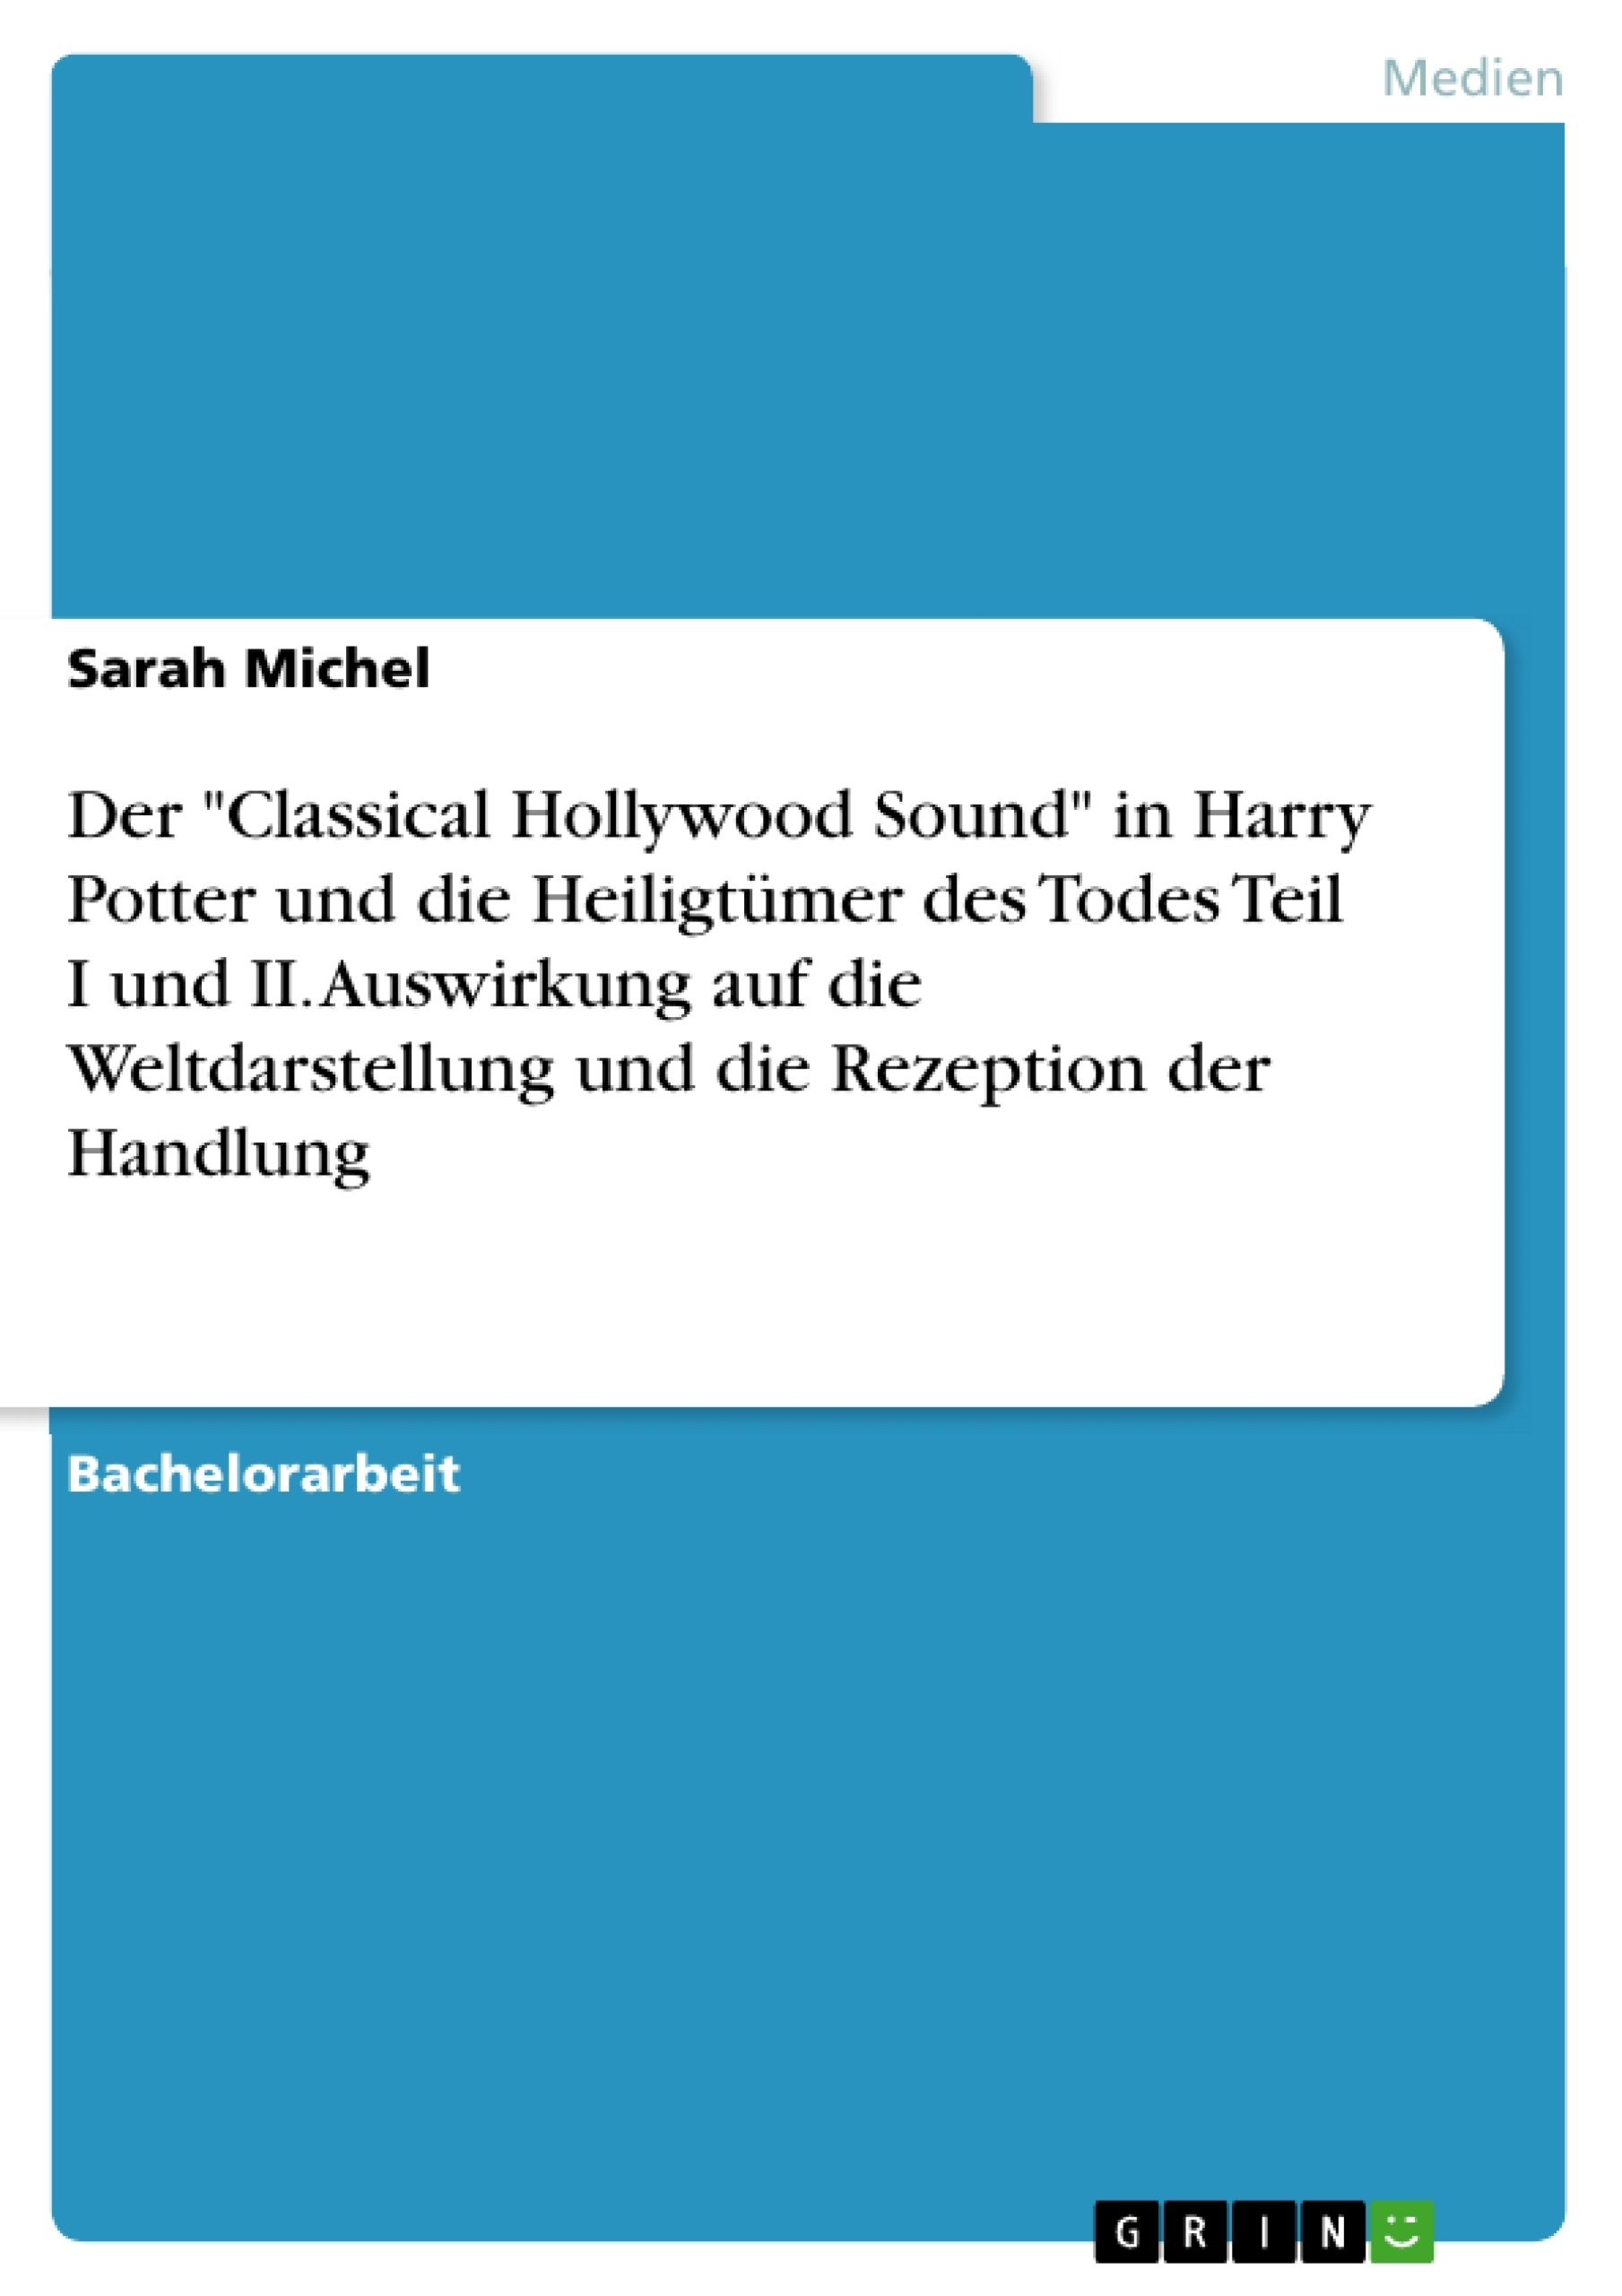 Título: Der "Classical Hollywood Sound" in Harry Potter und die Heiligtümer des Todes Teil I und II. Auswirkung auf die Weltdarstellung und die Rezeption der Handlung